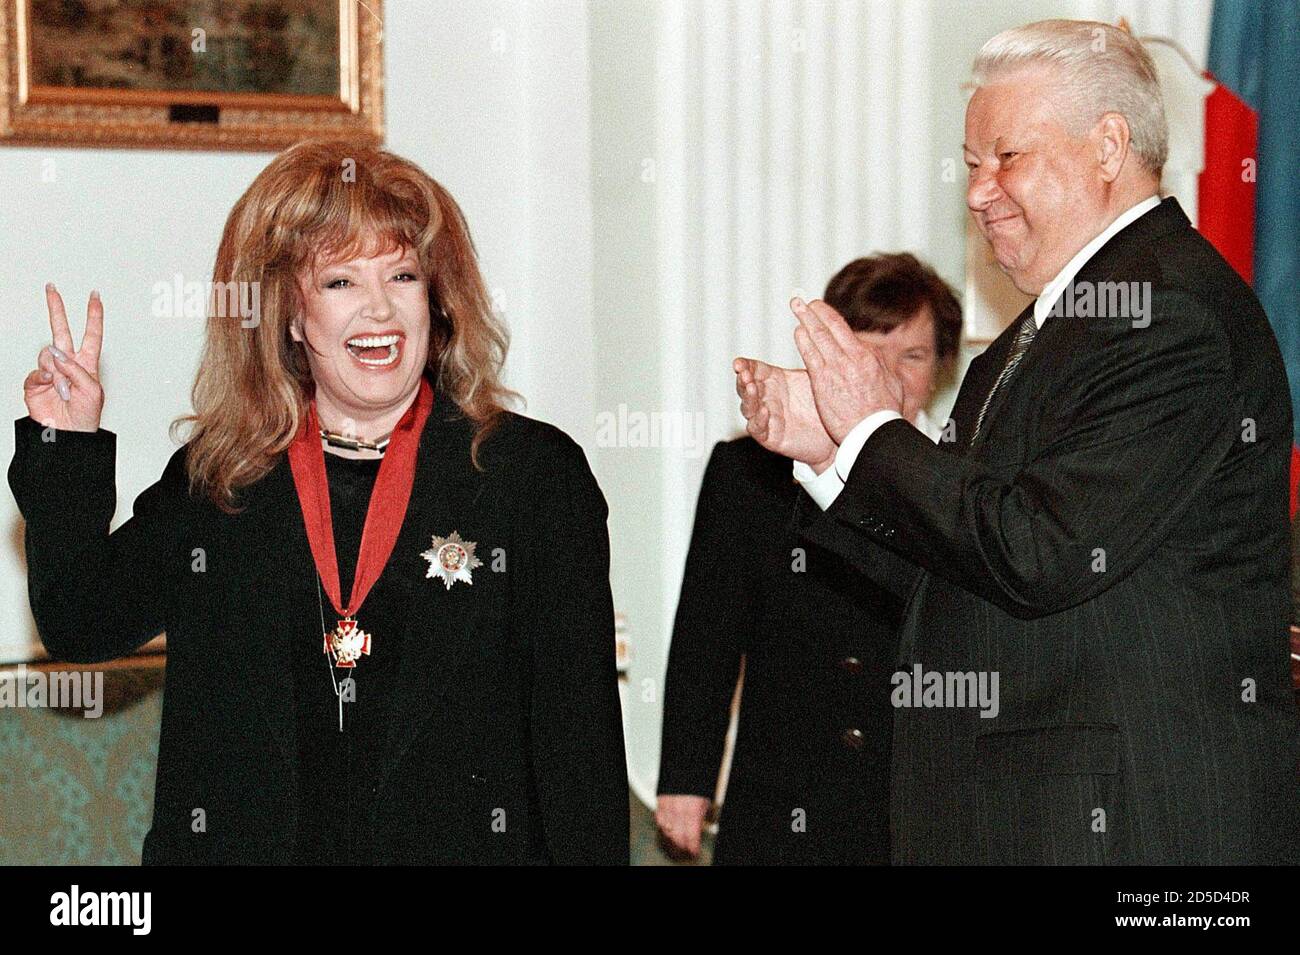 Der russische Präsident Boris Jelzin applaudes der Popsängerin Alla Pugacheva, die nach der Verleihung des Ordens "für den Dienst an der Heimat" im Kreml am 15. April die Geste machte. Pugatschewa, eine der berühmtesten russischen Popsängern, feiert am Donnerstag ihren 50. Geburtstag. MF/WS Stockfoto